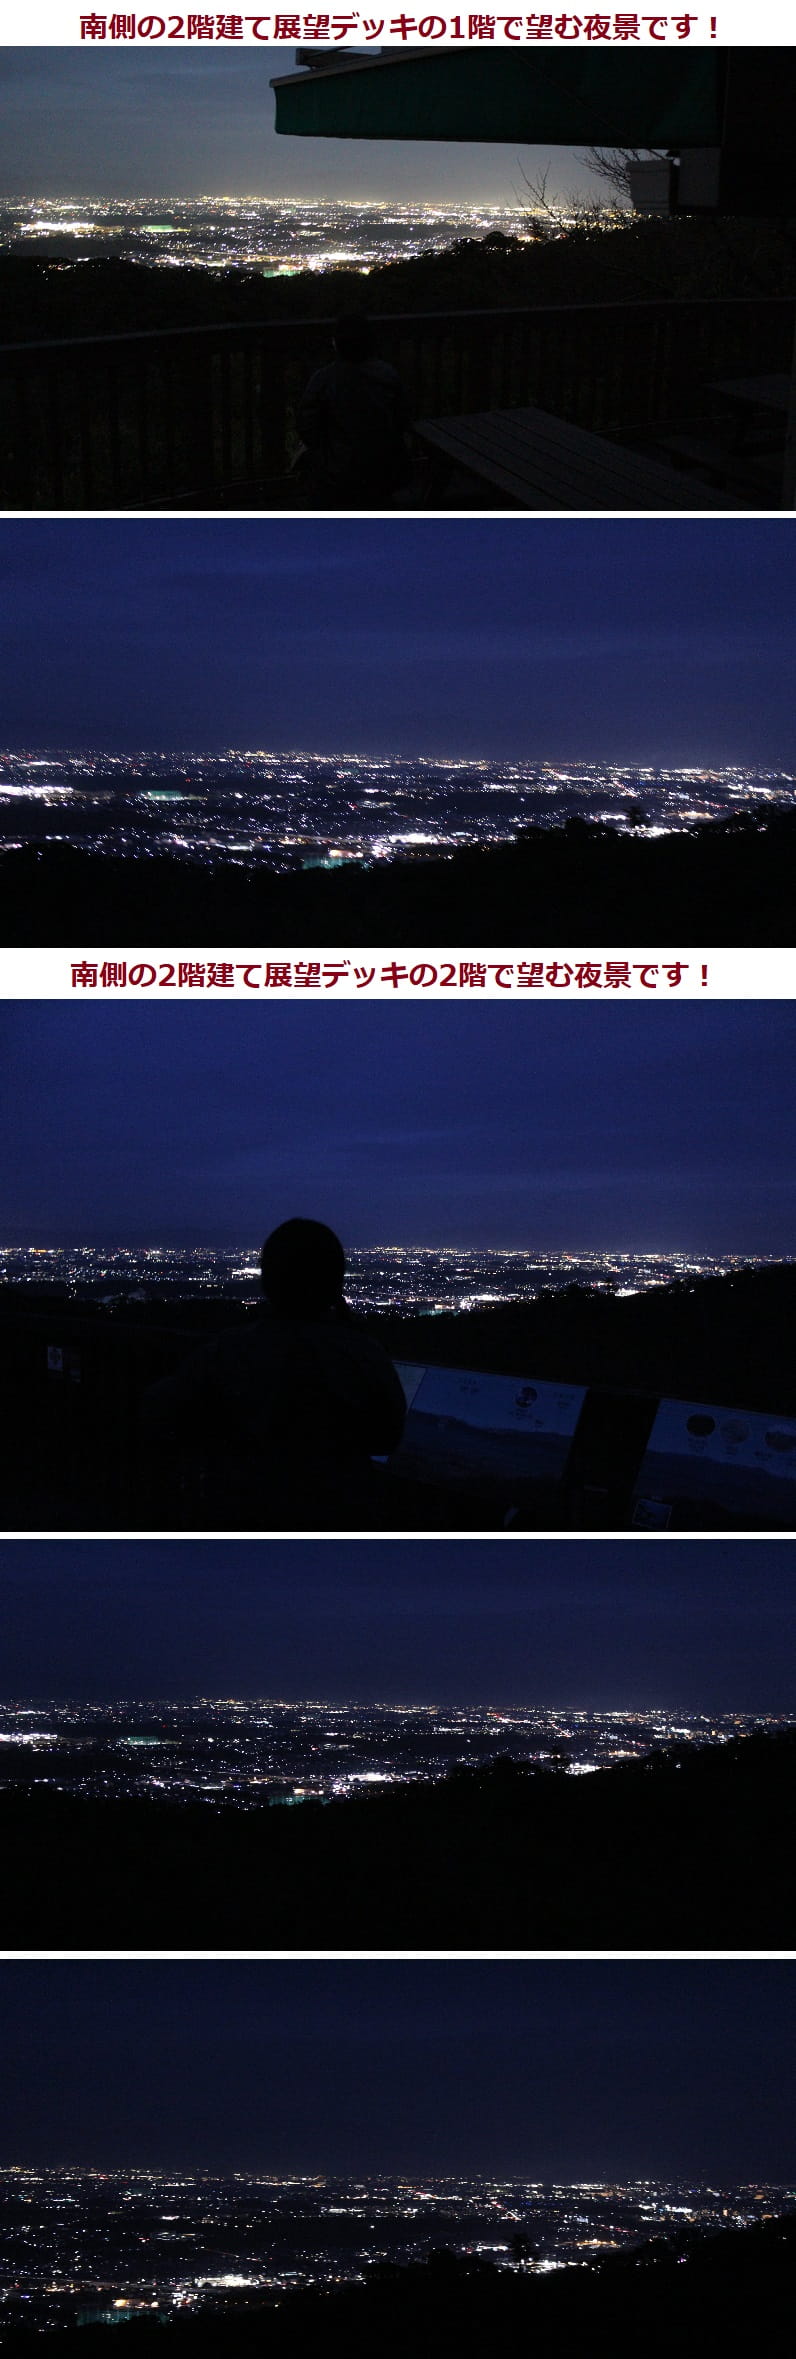 明神山自然の森公園 展望台より望む夜景 アクセス 駐車場 気まぐれファミリー弾丸旅物語